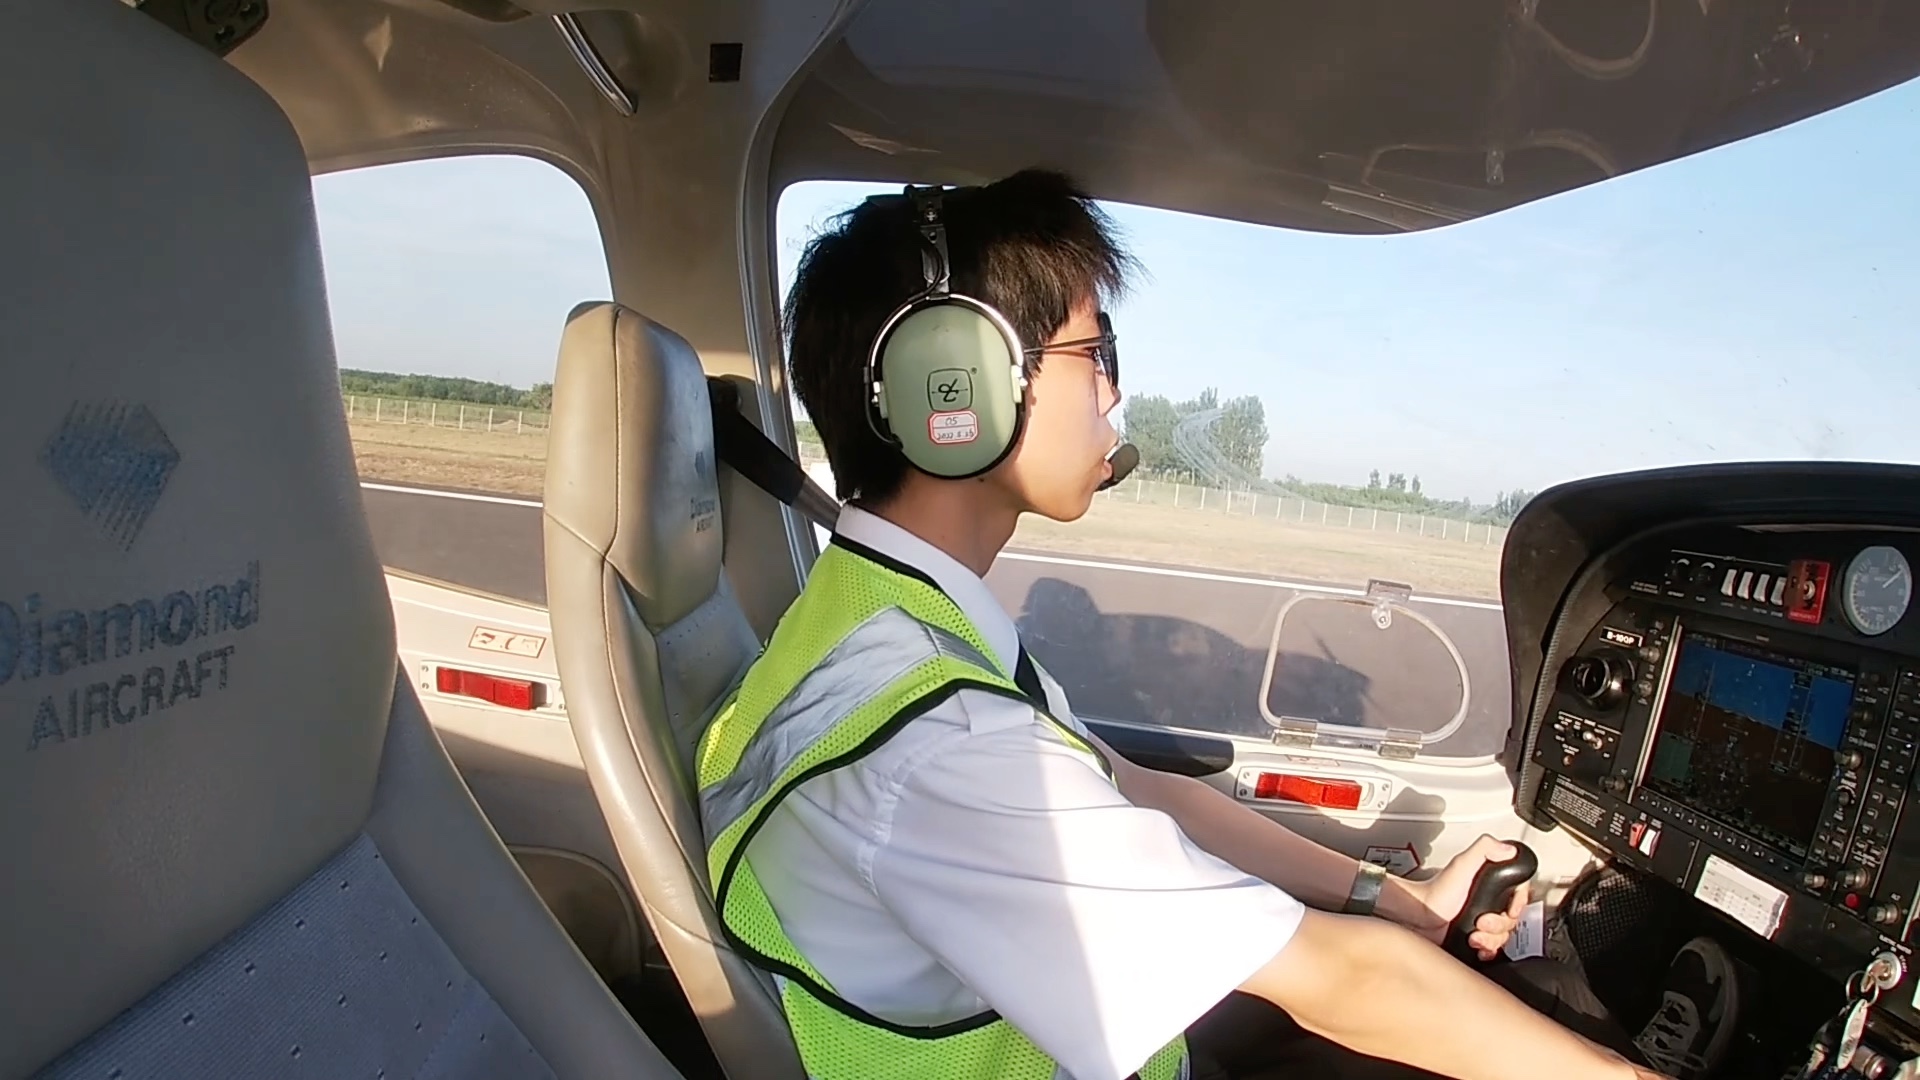 国内年龄最小:16岁飞行学员首次单飞起飞录像